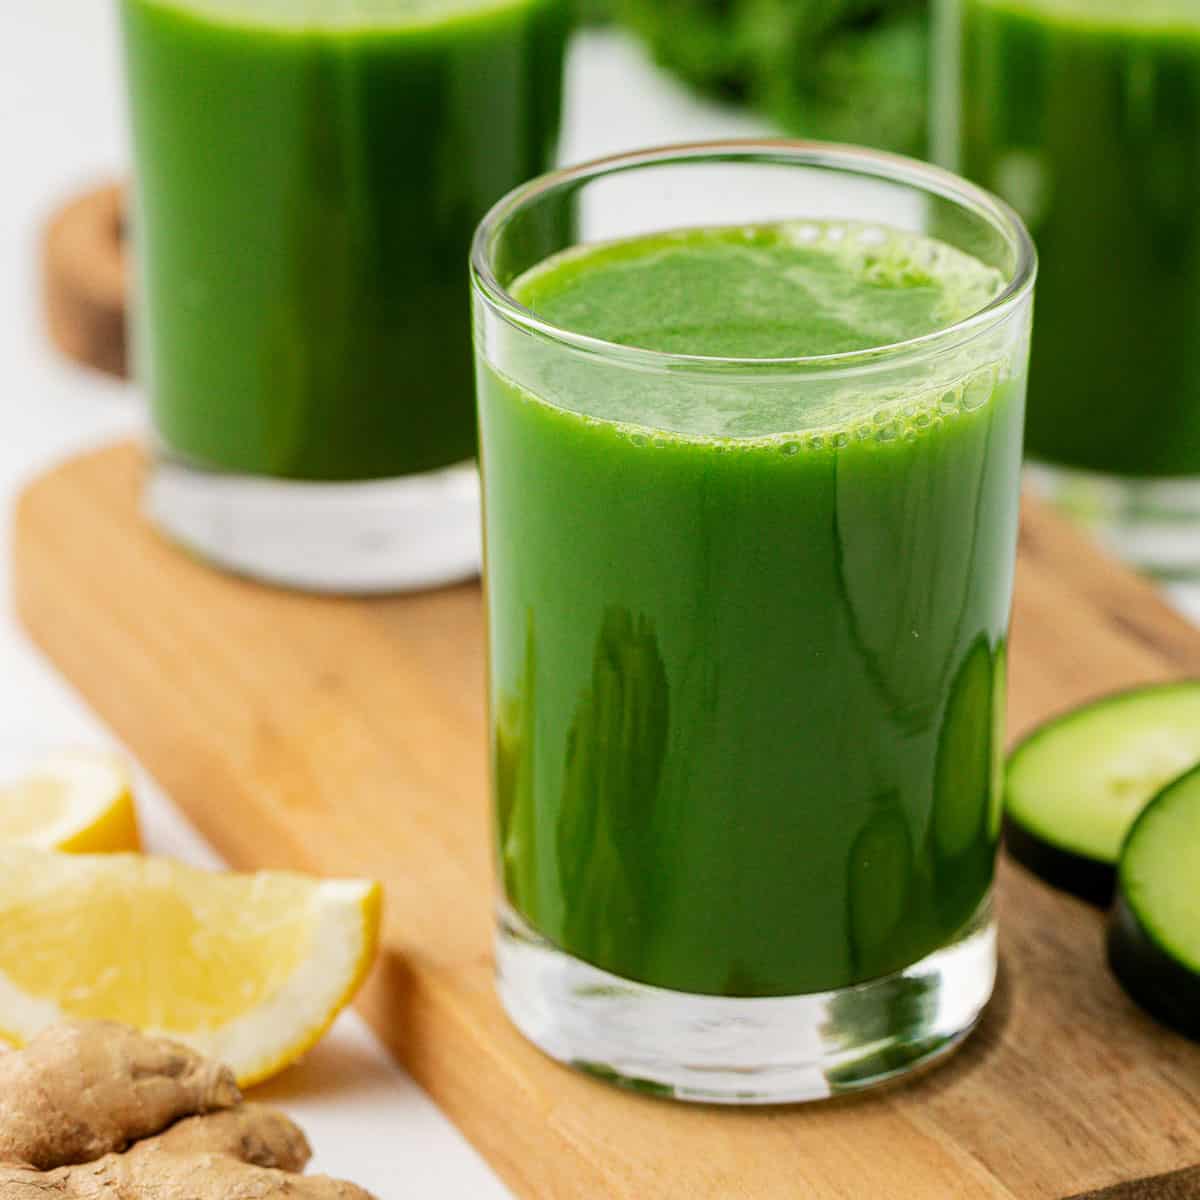 kale juice in a glass